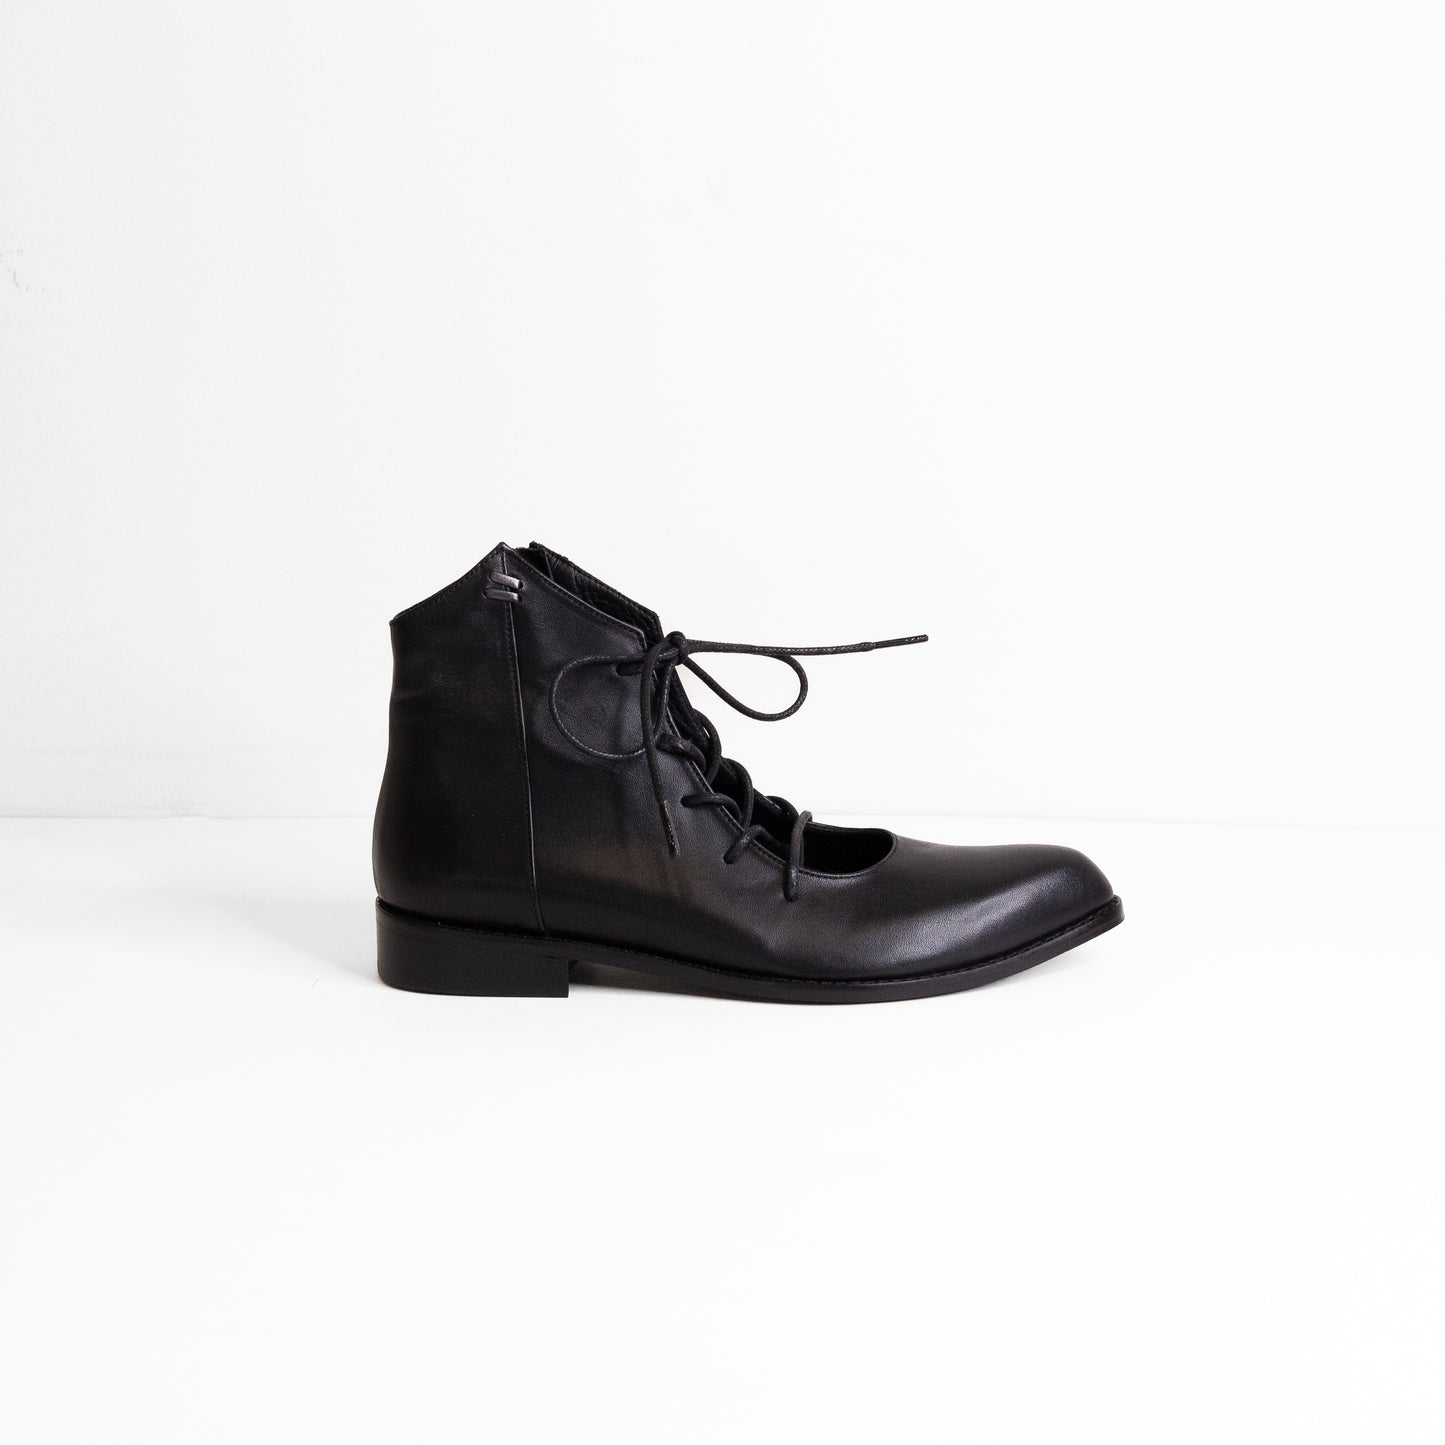 Nola black boot